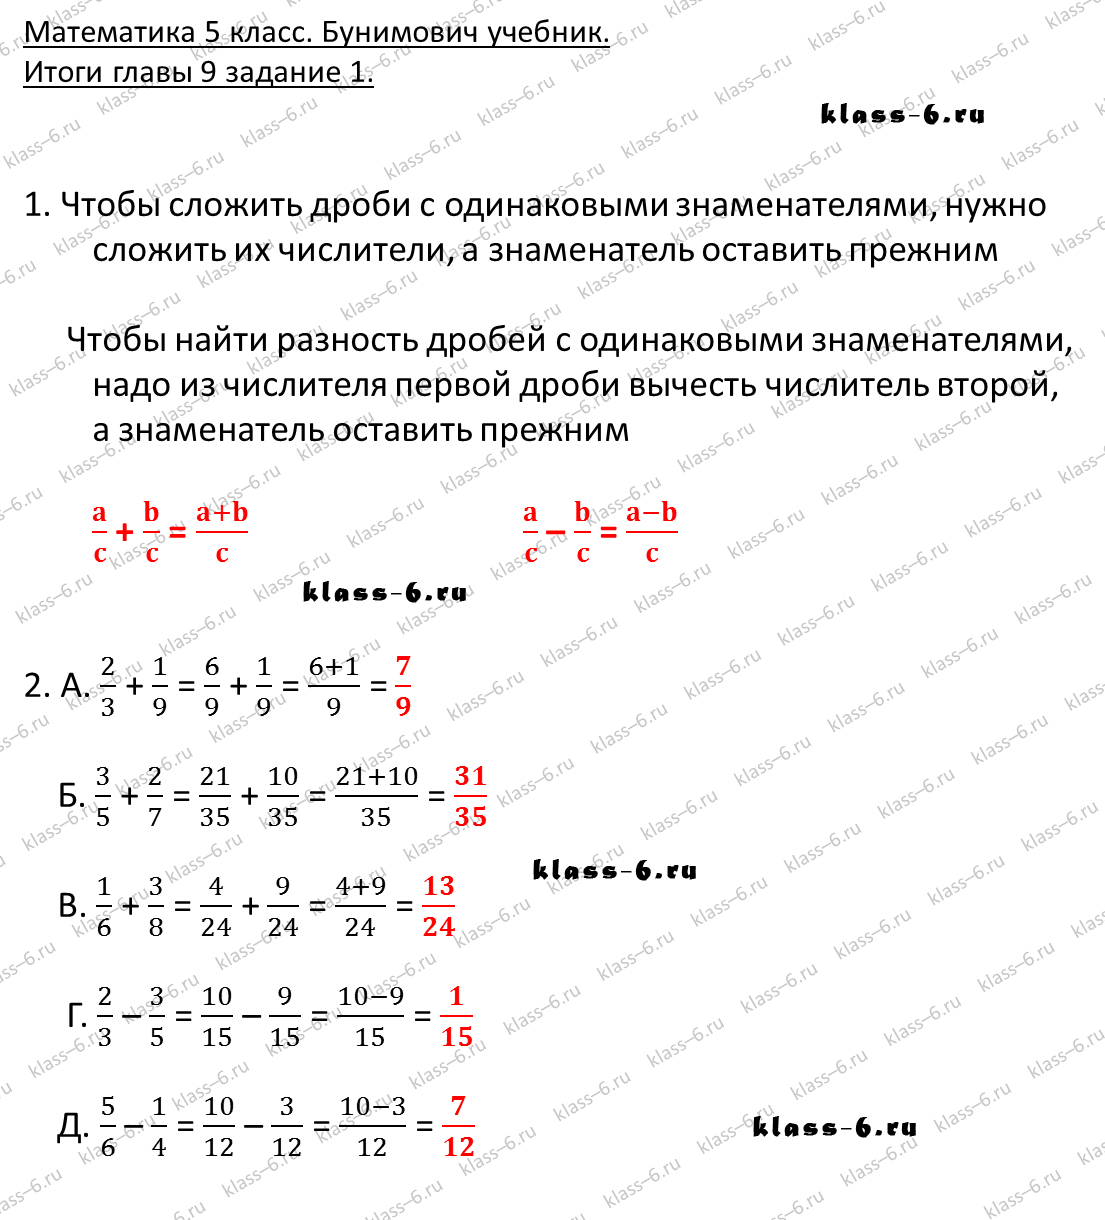 решебник и гдз по математике учебник Бунимович 5 класс итоги главы 9-1